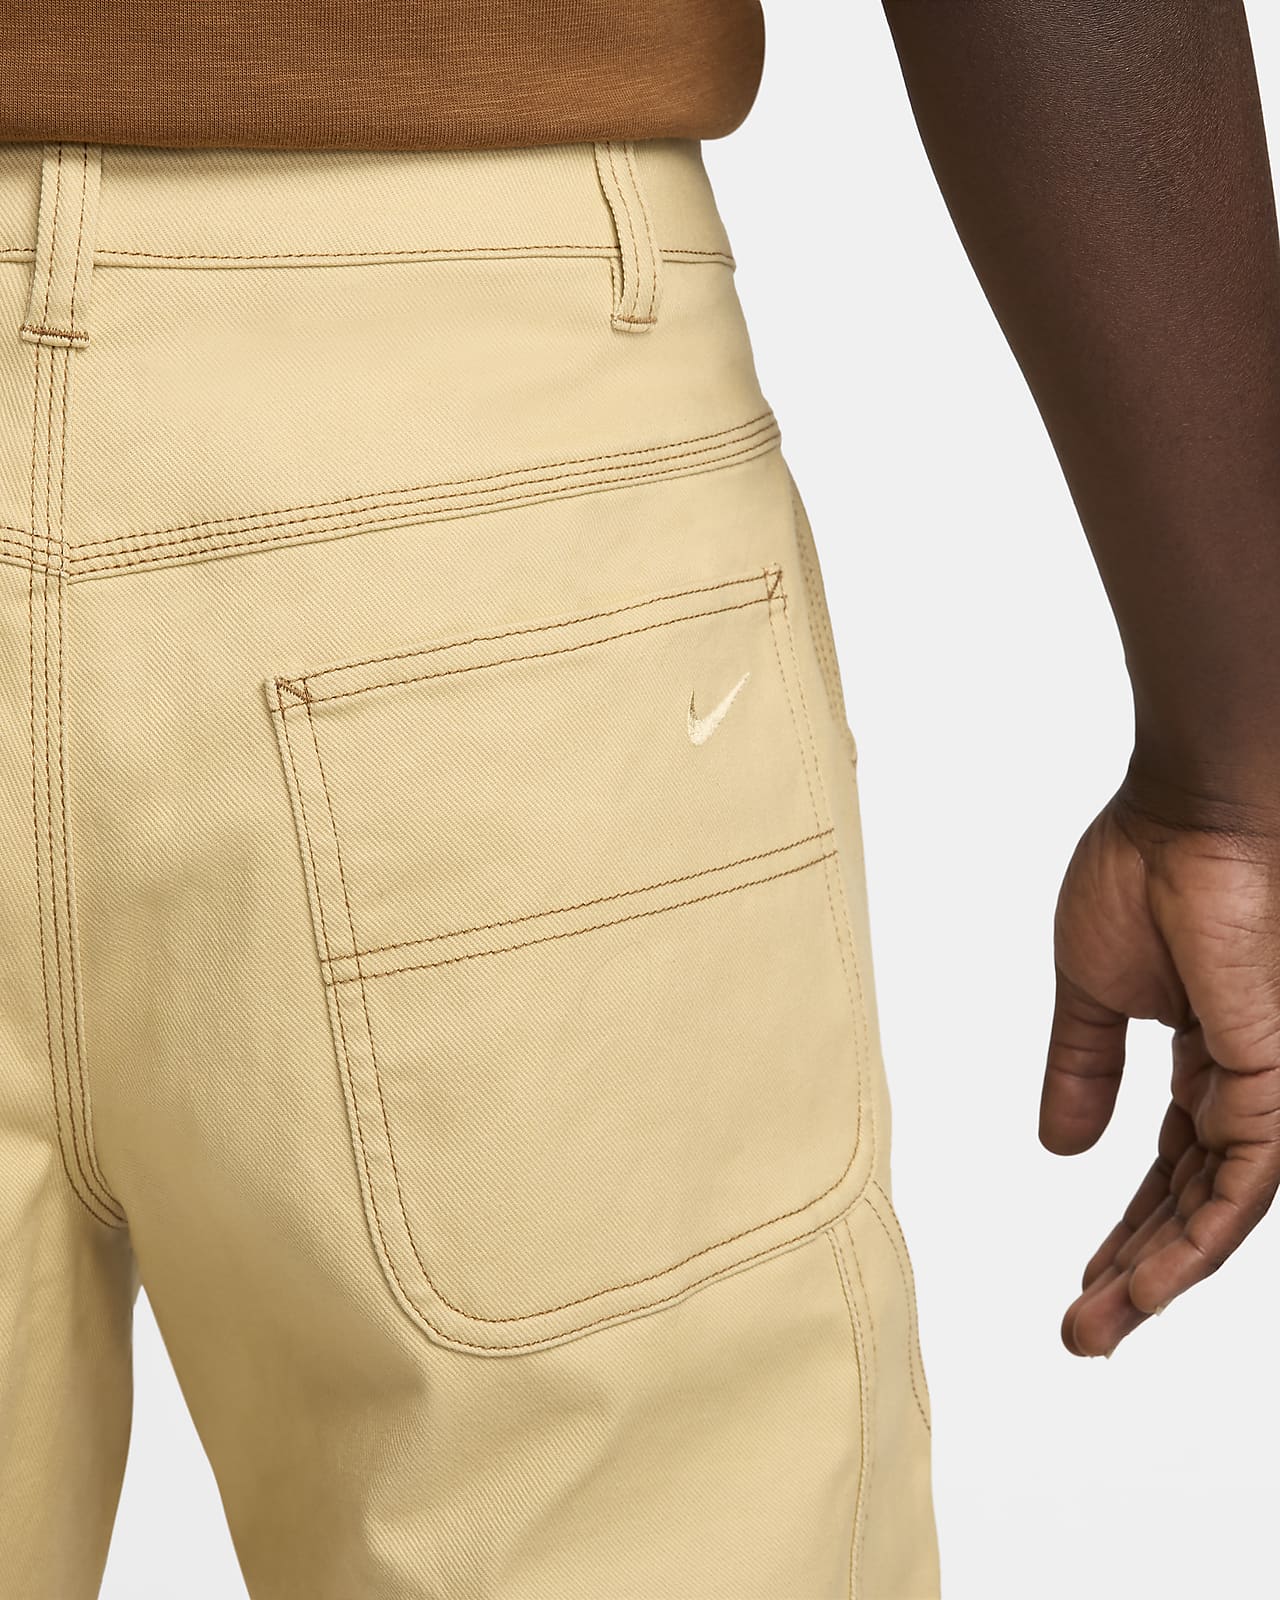 Nike Life carpenter pants in brown